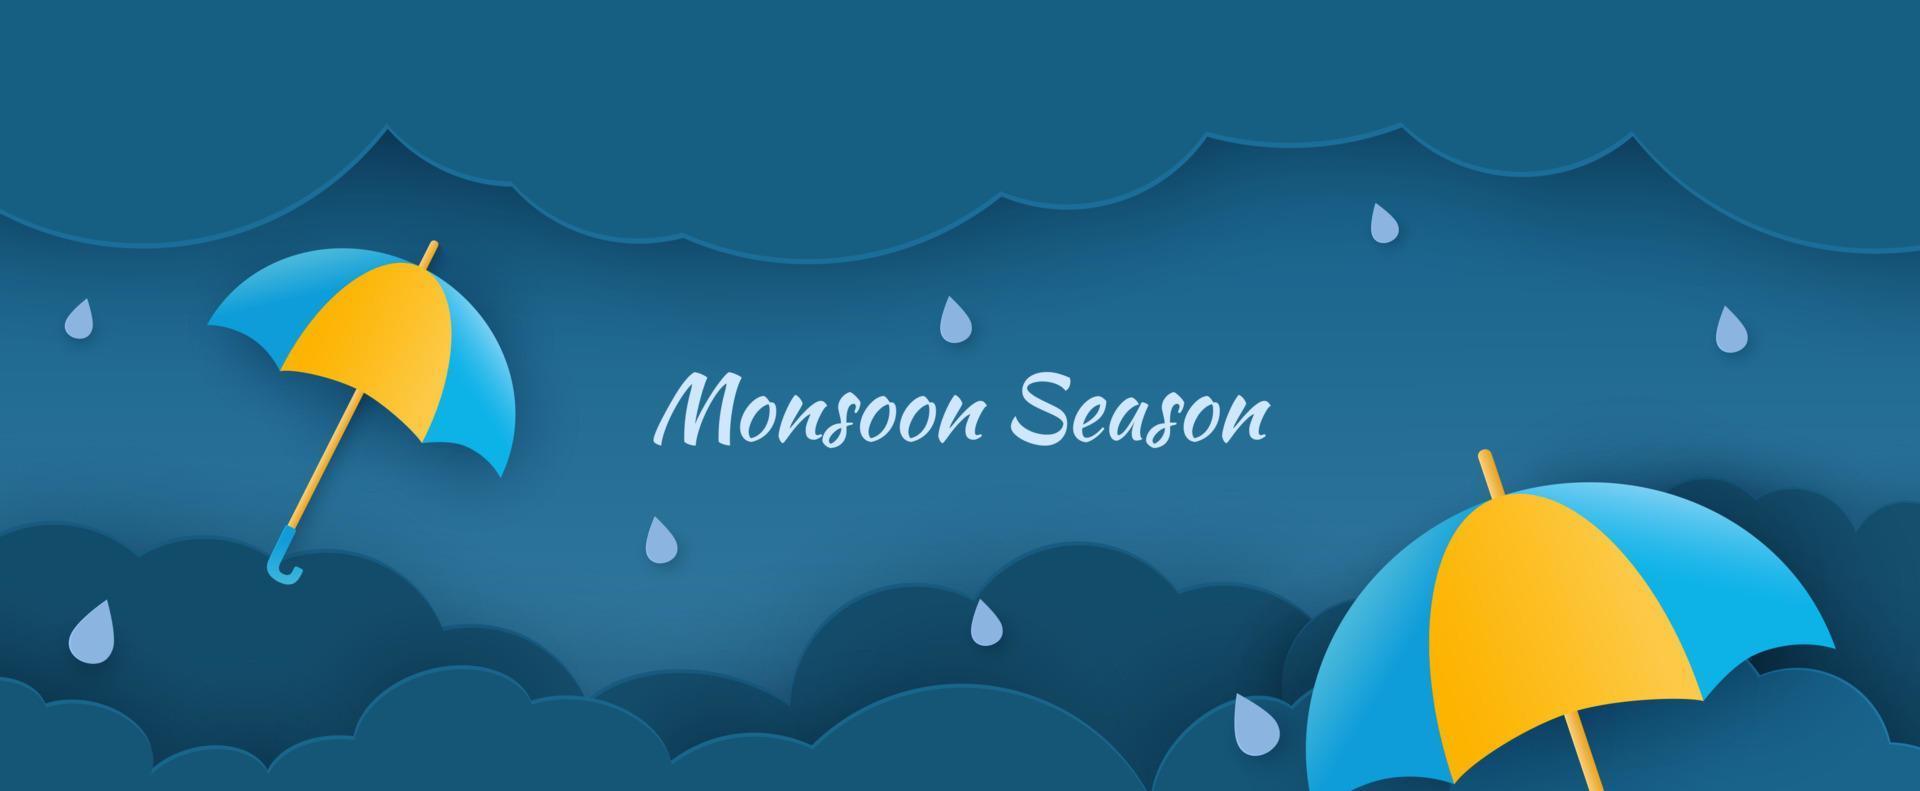 modello di poster per un fantastico design di vendita dei monsoni con ombrelli colorati impreziositi su sfondo di nuvole blu tagliate su carta. illustrazione vettoriale